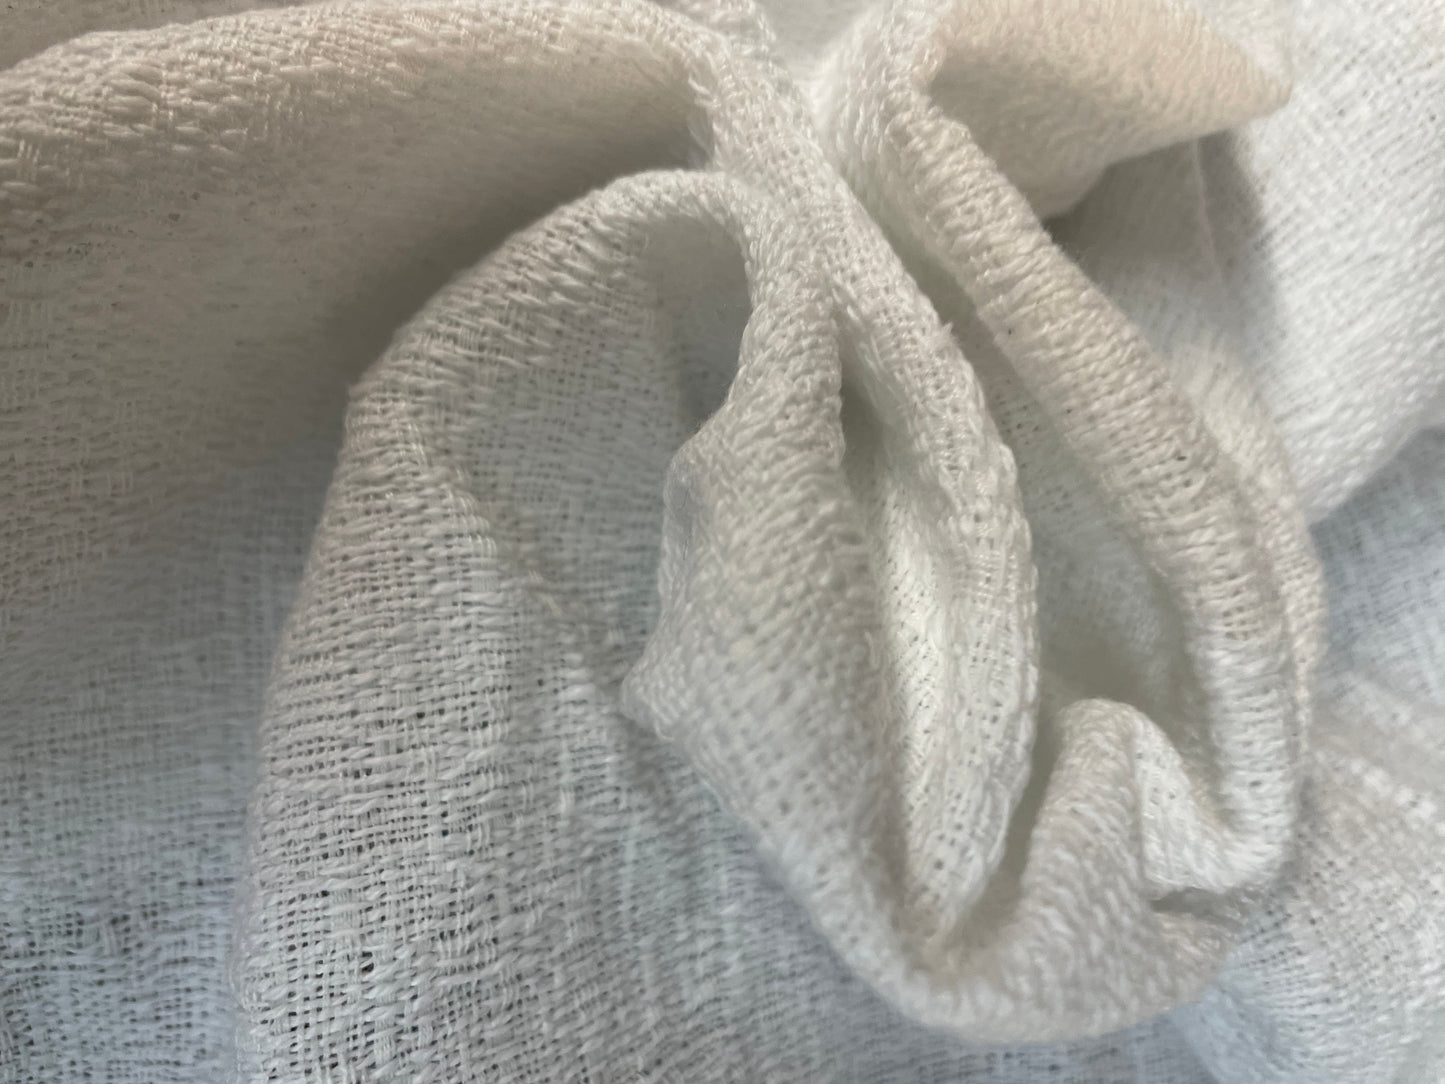 Woven Textured Cotton - White